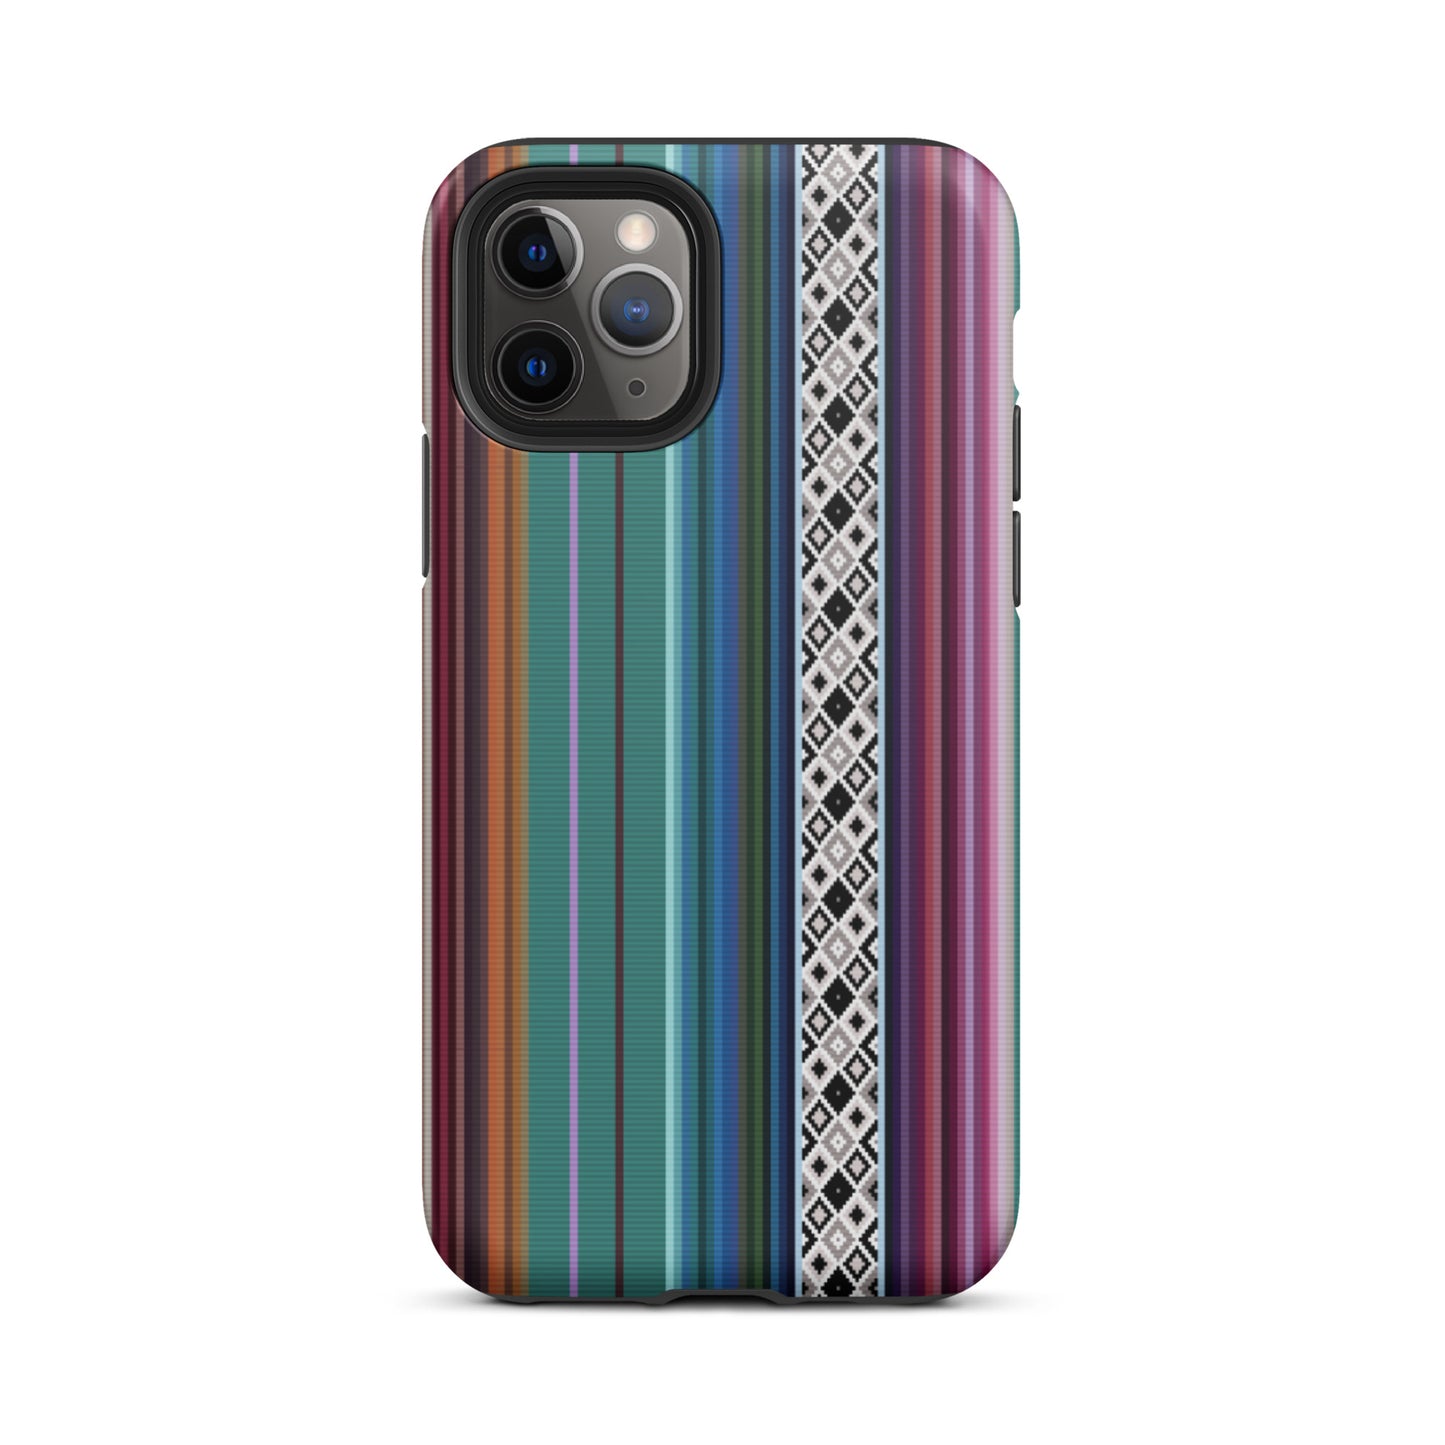 Mexican Aztec Tough iPhone 11 Pro case